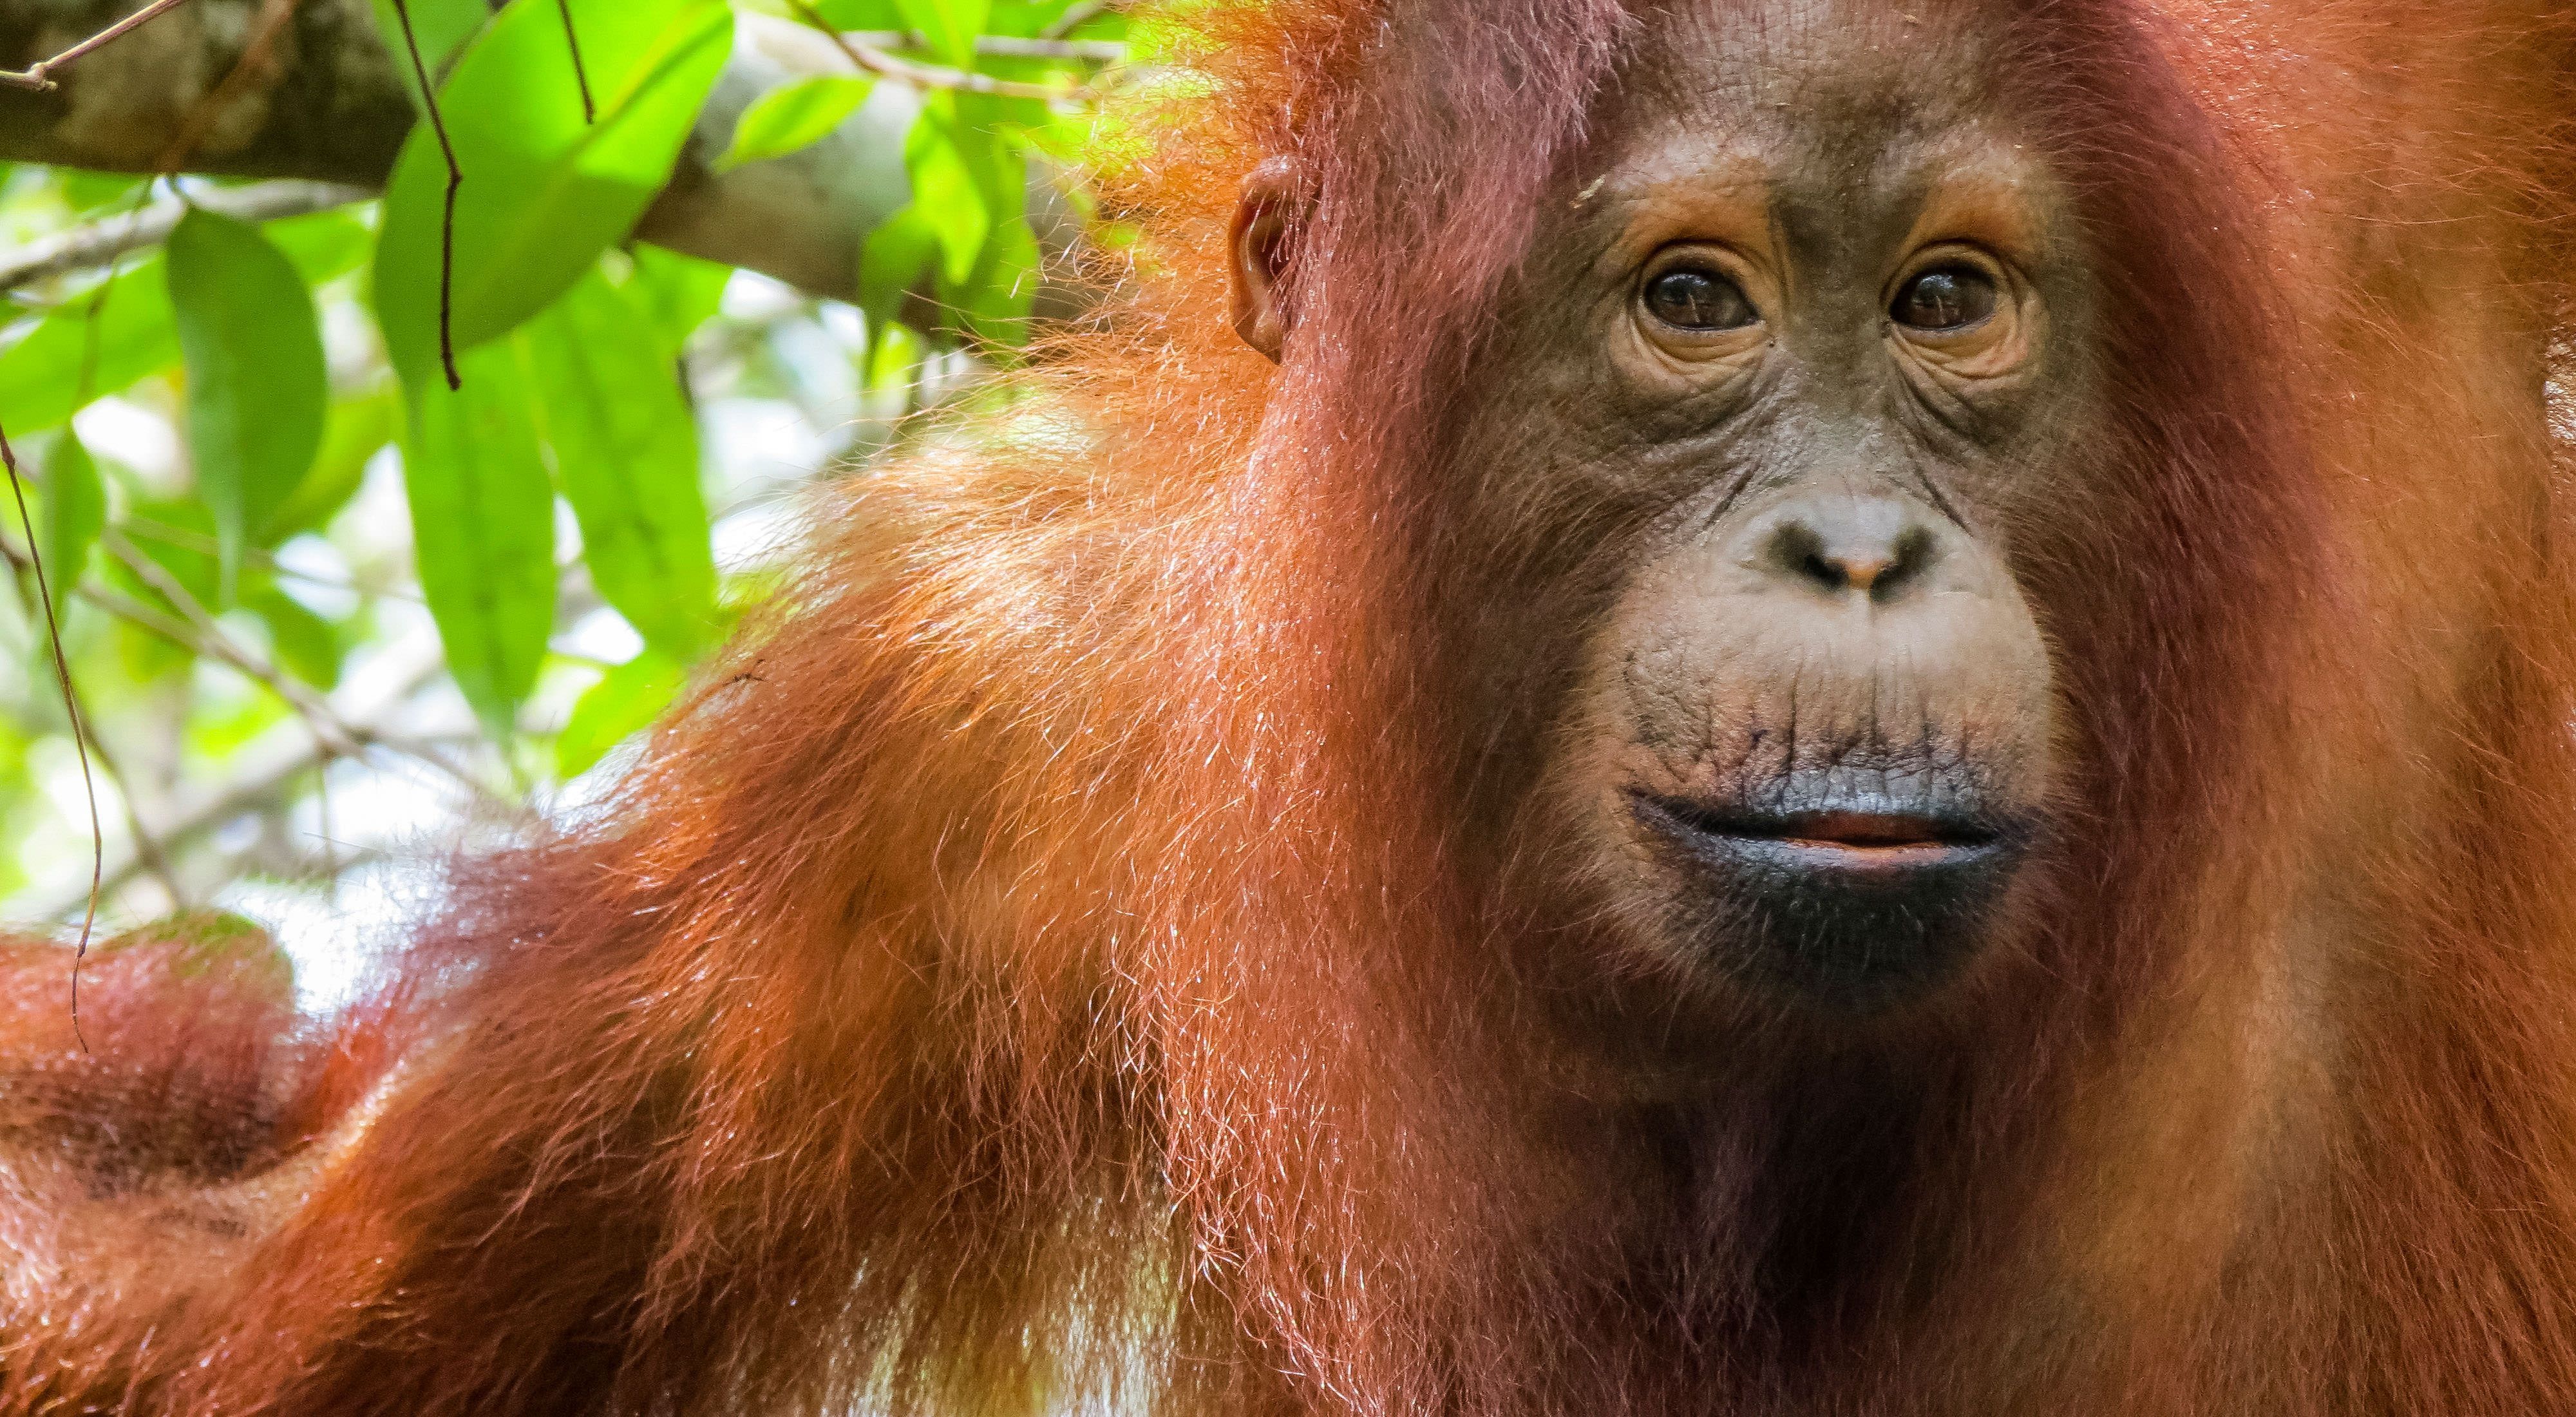 Orangutan batek zooa esakapatu eta turista batekin boxeatzen hasten da.